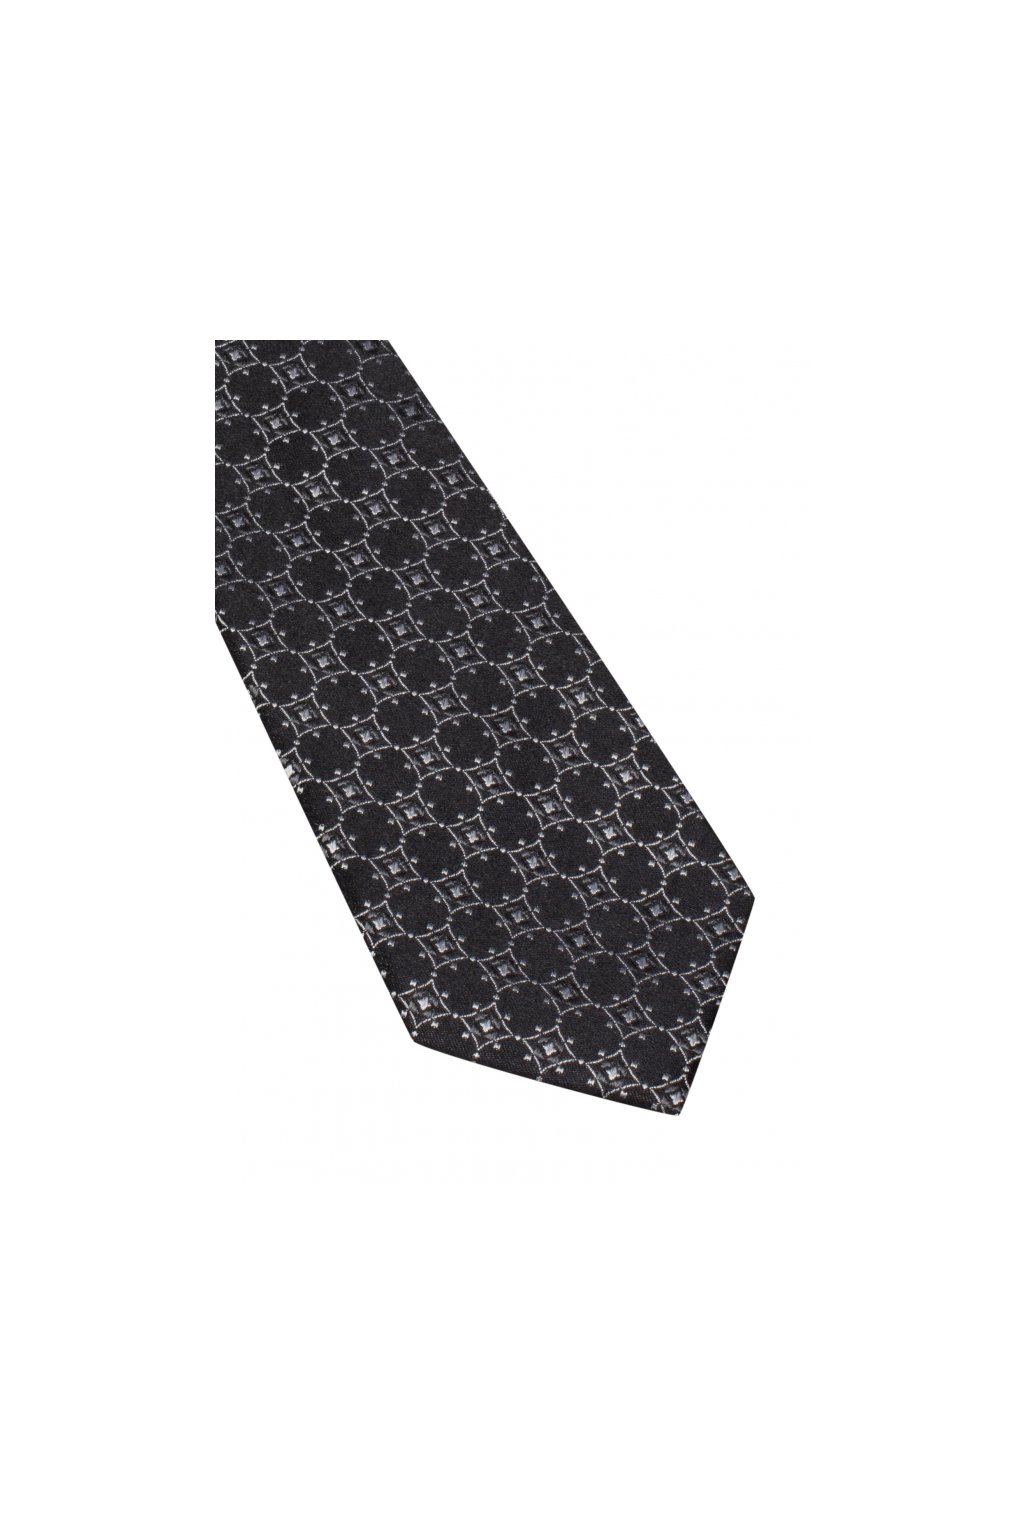 Úzká hedvábná kravata Eterna - černá se vzorem